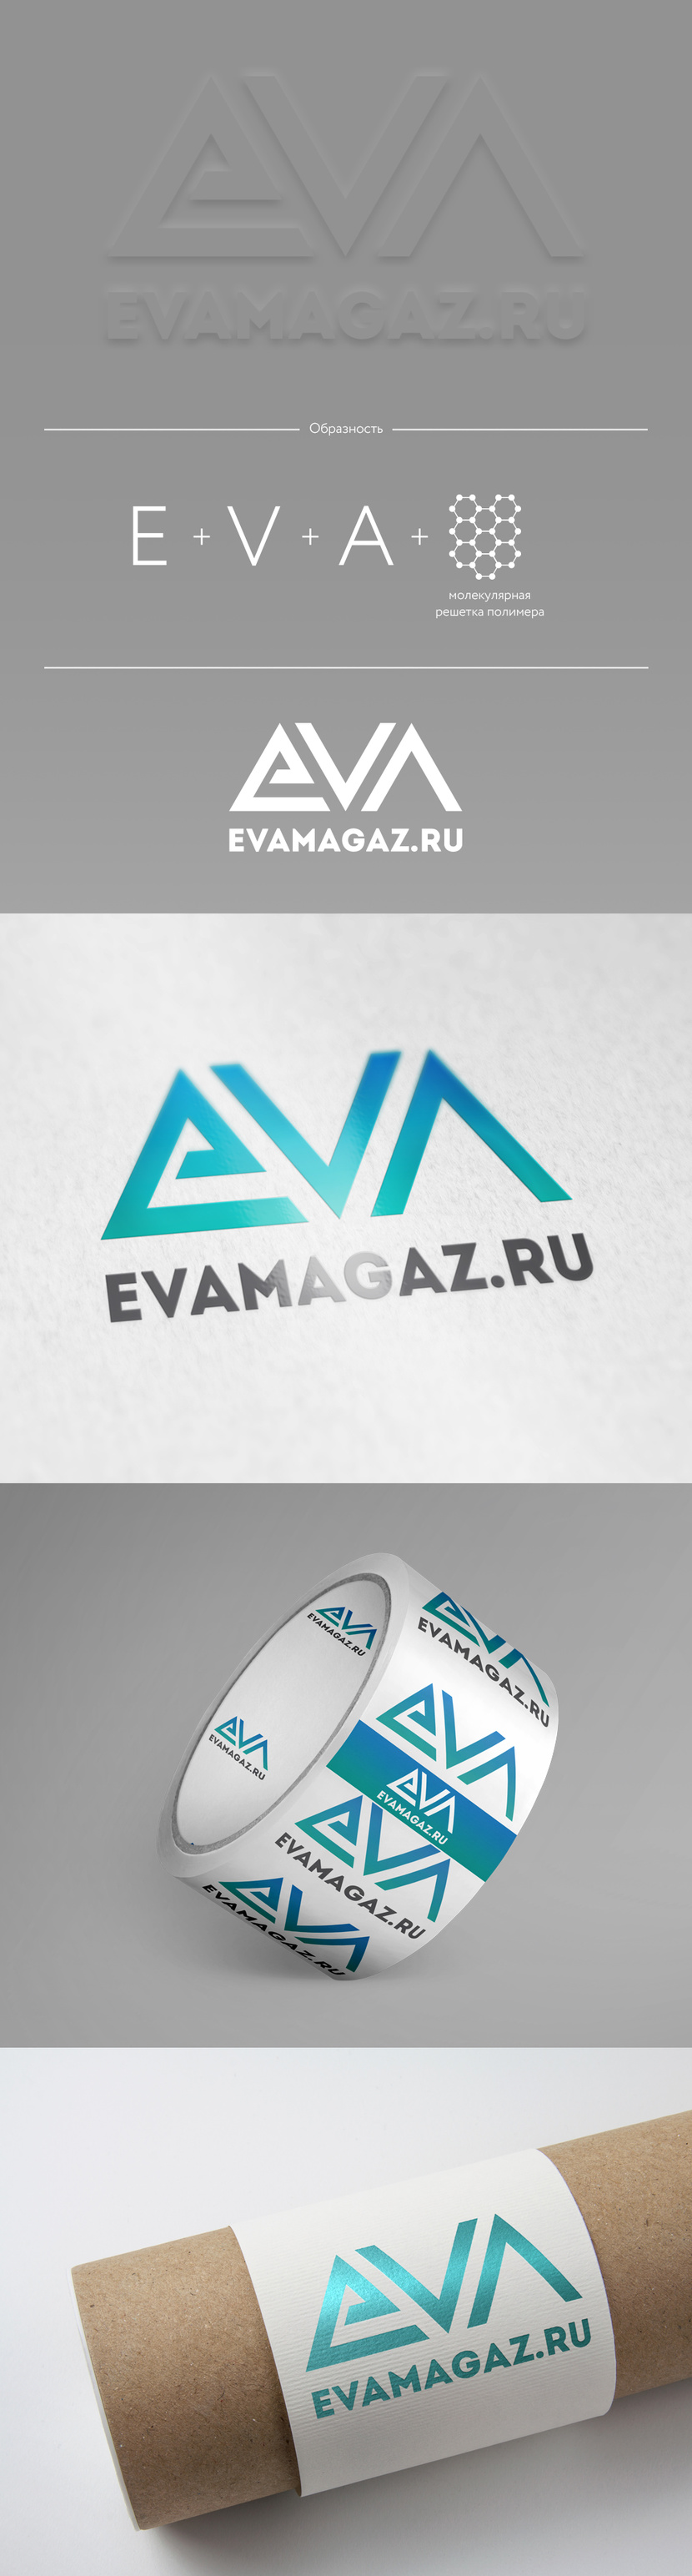 И третий вариант по тем же мотивам - Логотип и фирменный стиль для интернет-магазина автомобильных EVA ковриков